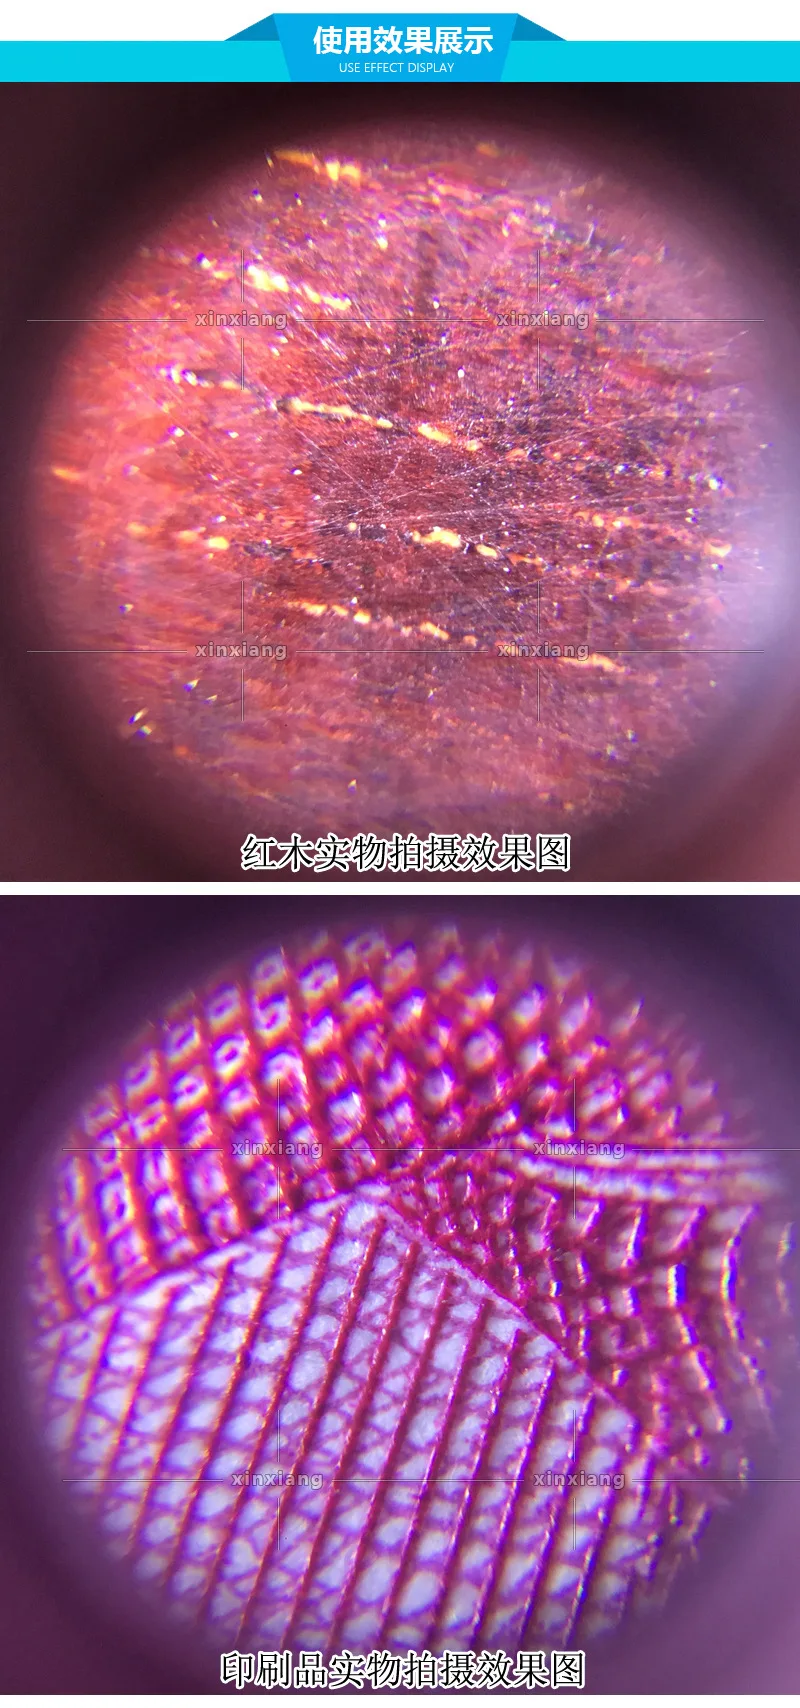 60X Портативный Многофункциональный микроскоп карманный мини Лупа с светодио дный свет банкнот проверки миниатюрный микроскоп